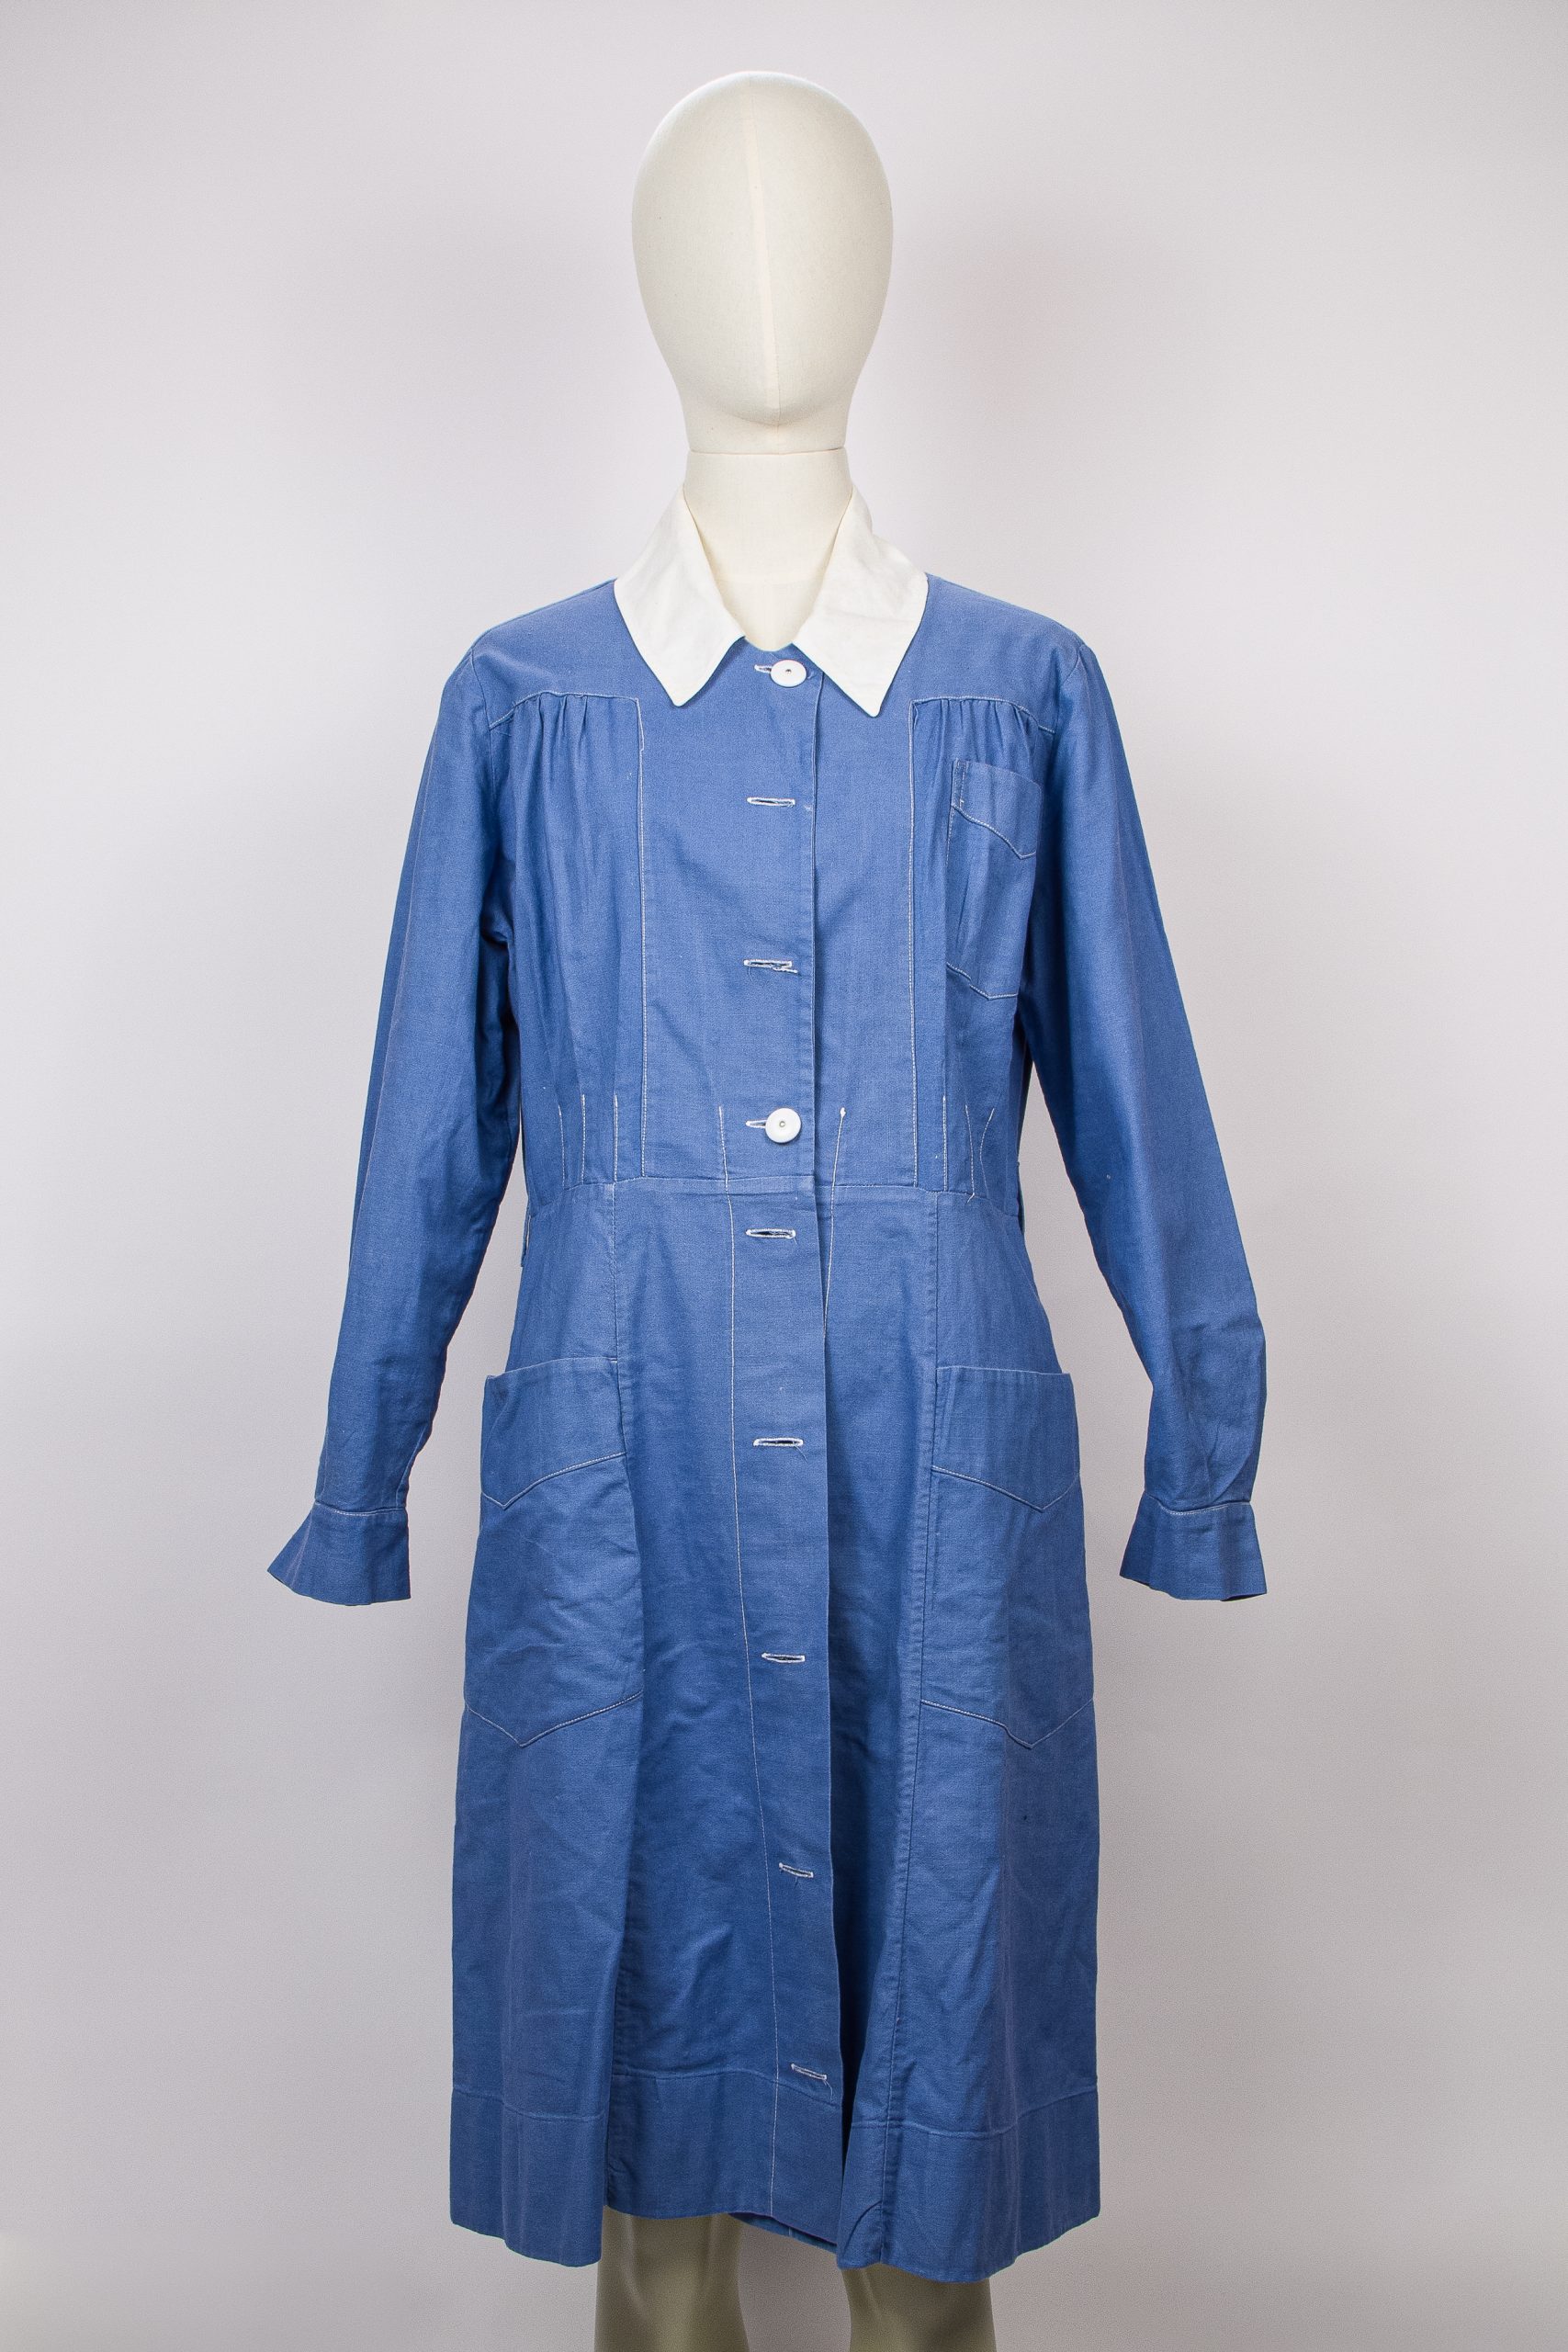 blue vintage nurse's uniform with a white collar